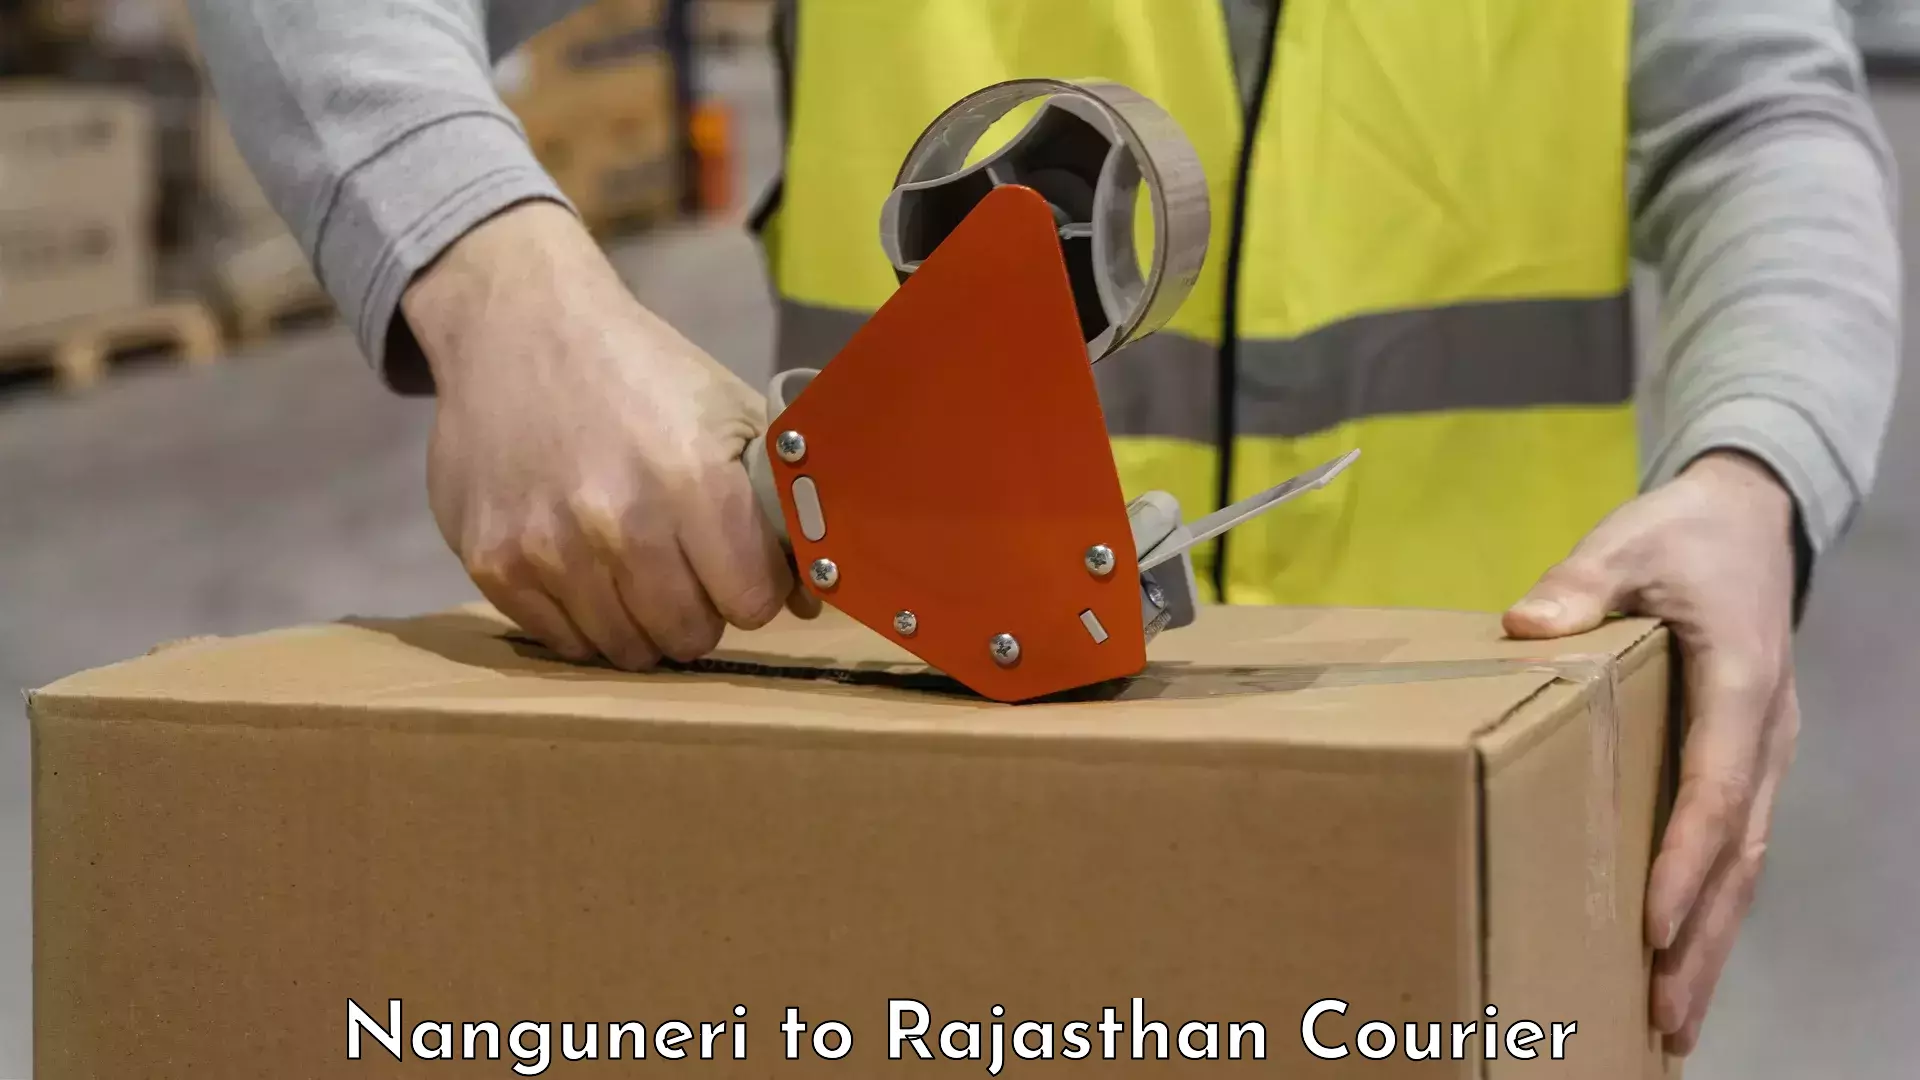 Luggage delivery app Nanguneri to Rajasthan